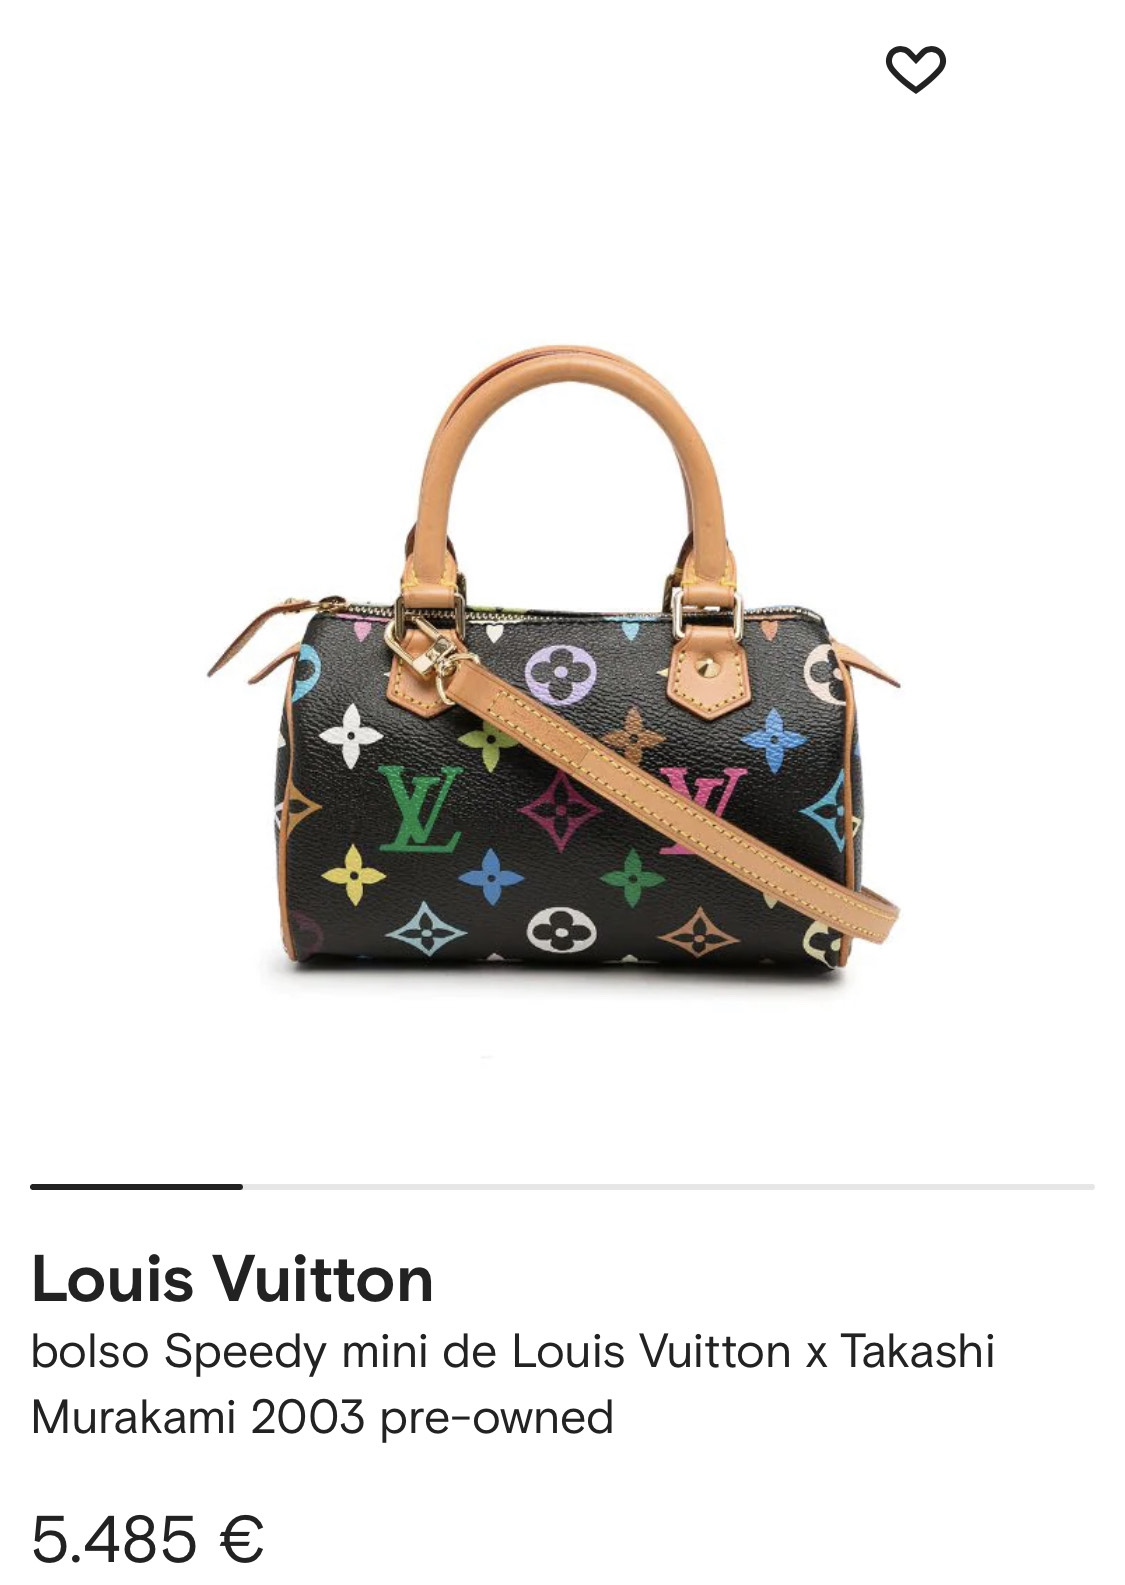 Cuánto cuesta la cartera de la nueva colección de Louis Vuitton que ya  tiene Wanda Nara – GENTE Online